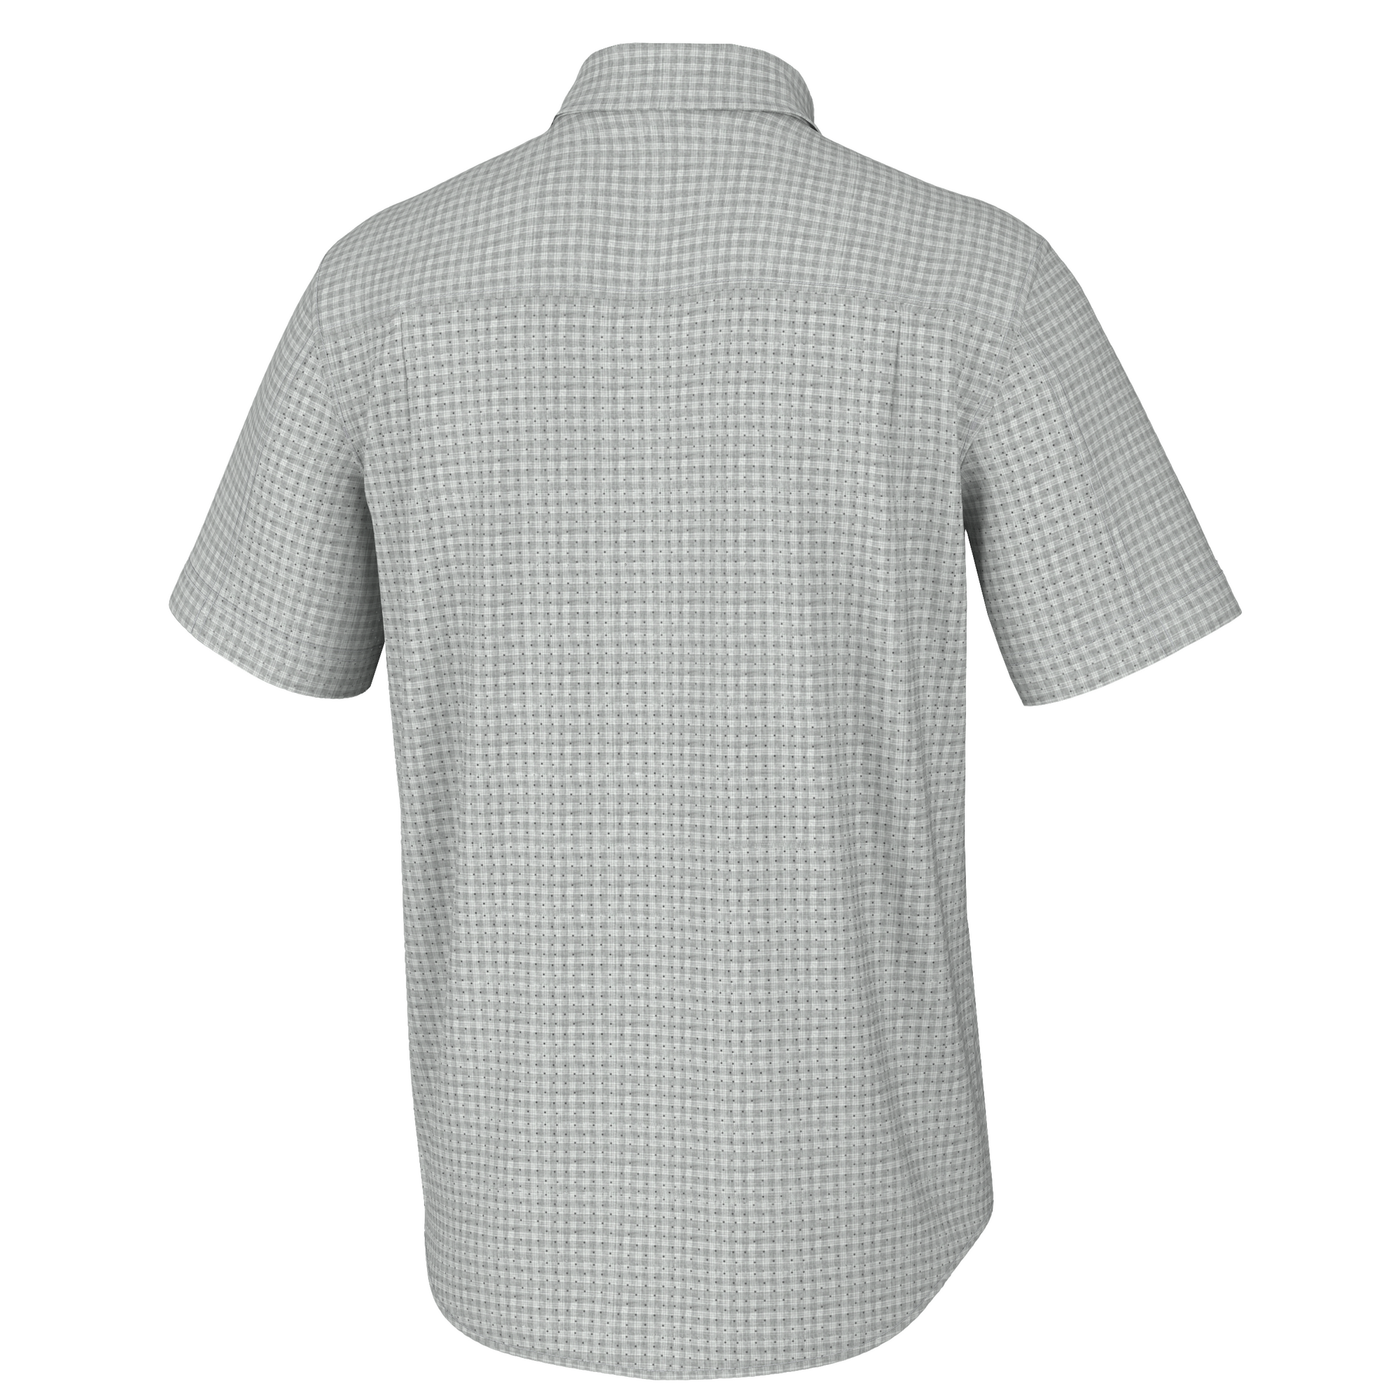 Huk Men's Tide Point Shirt - Short Sleeve - Khaki - Dance's Sporting Goods